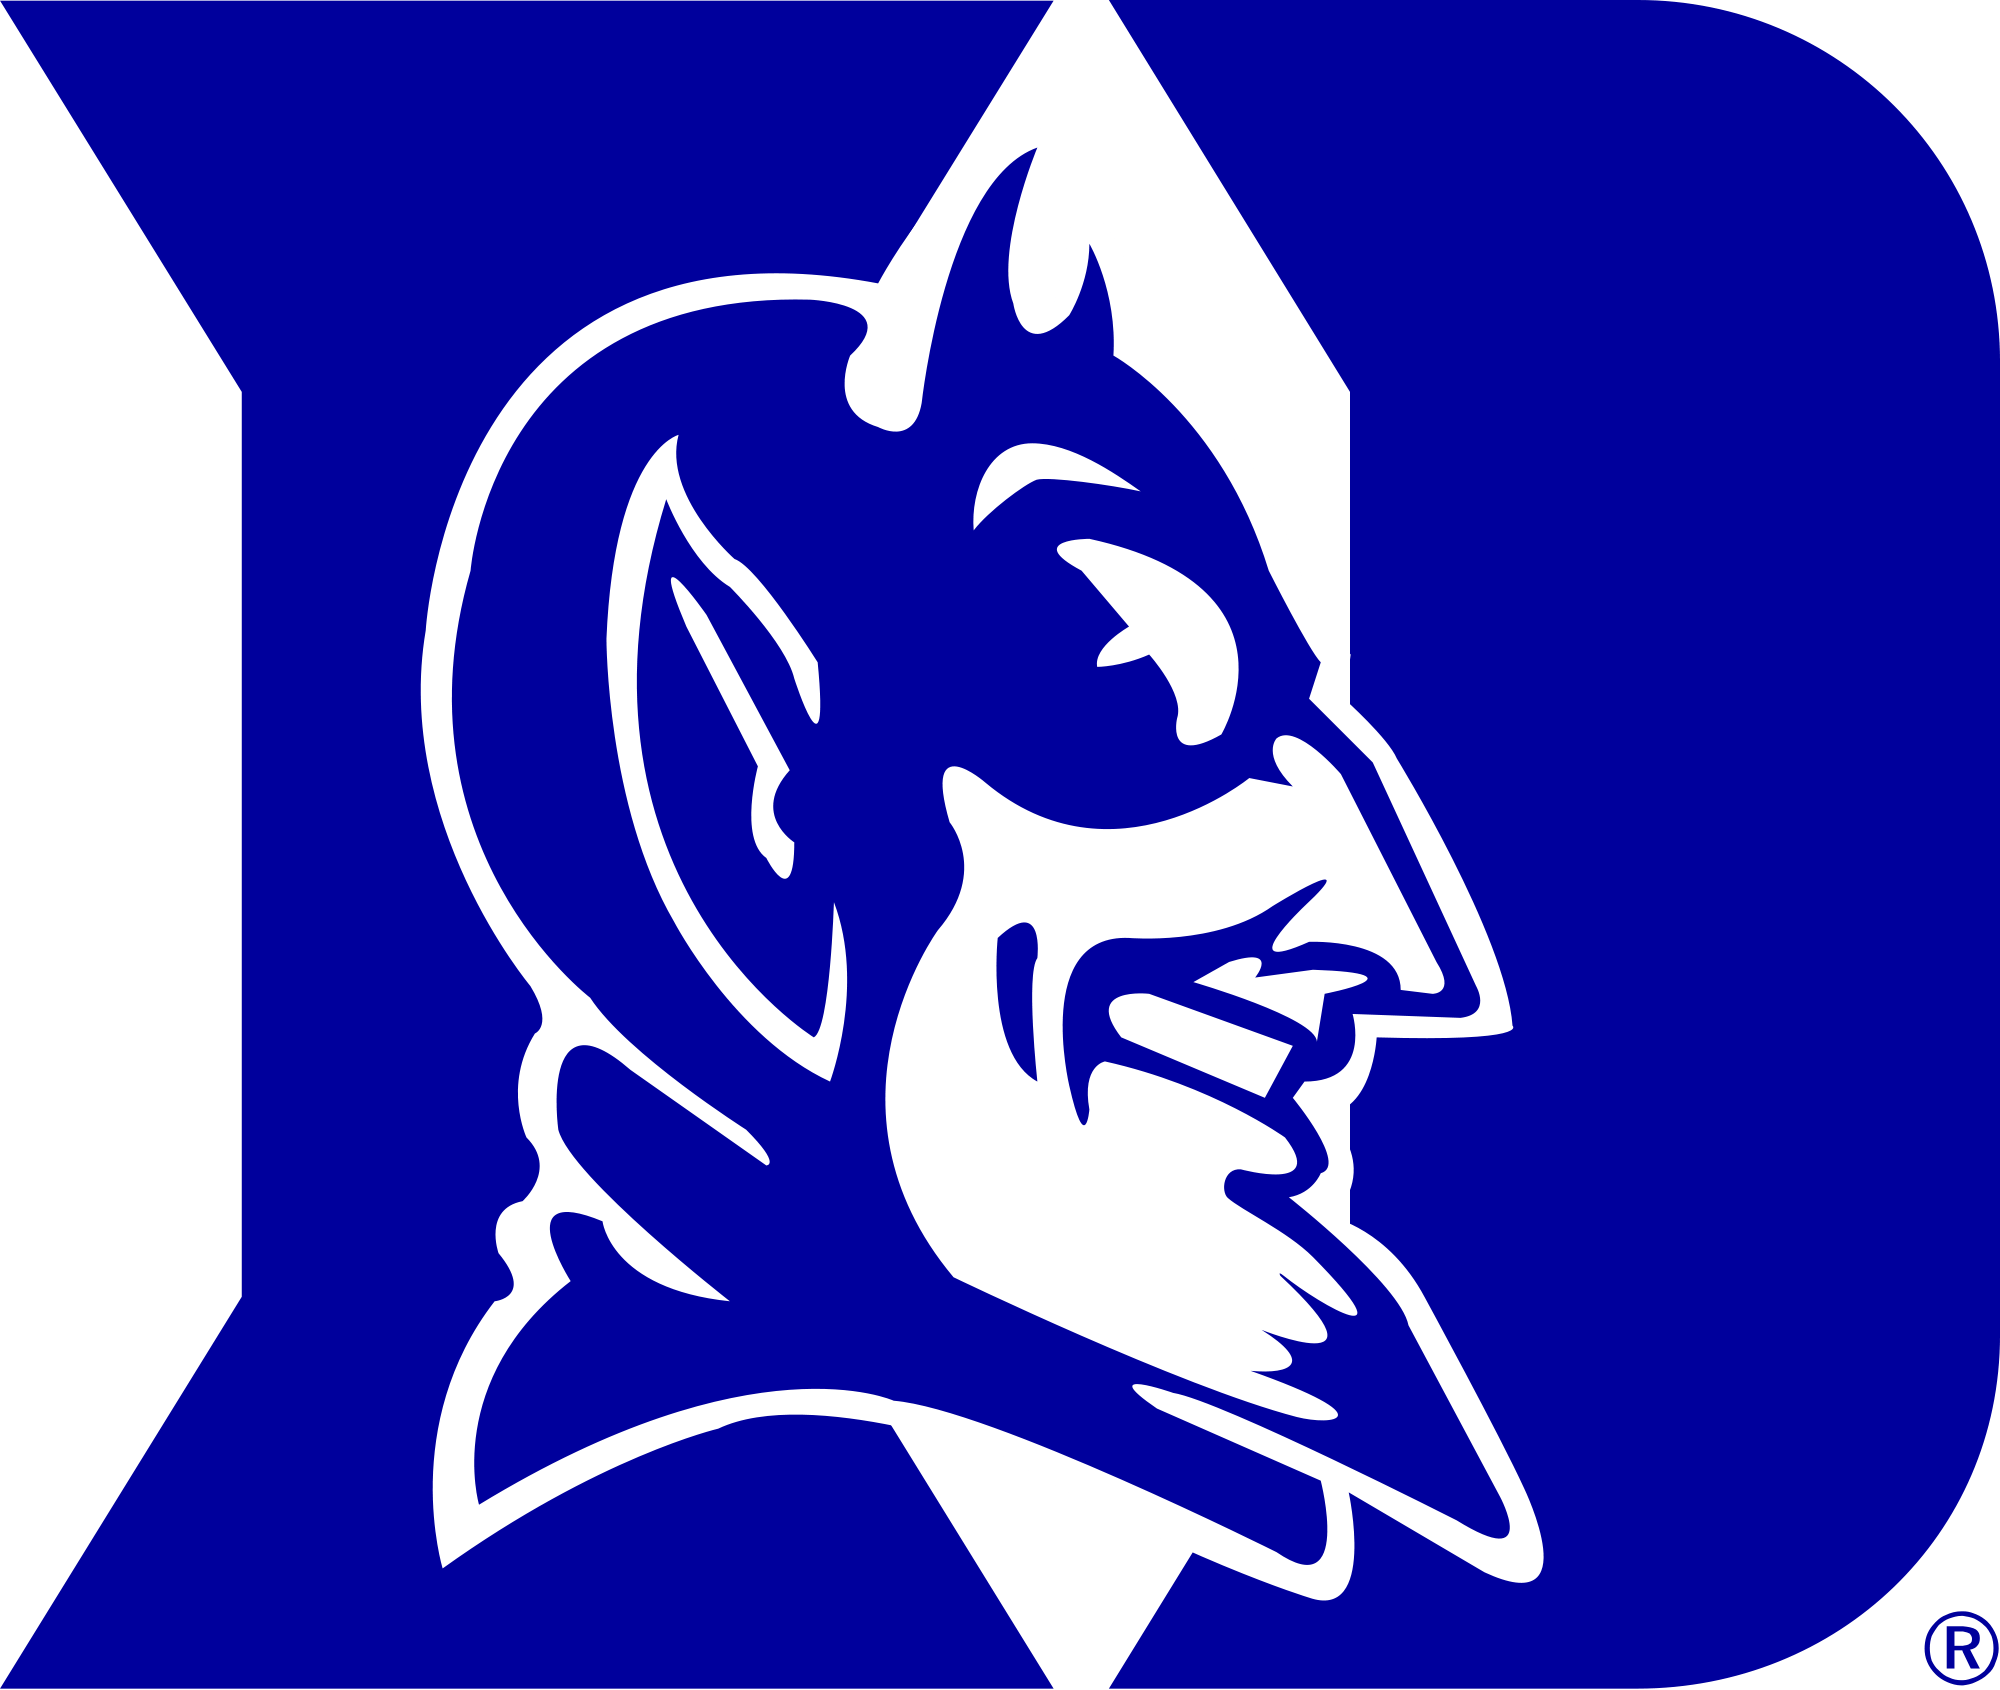 Duke University Blue Devils Logo - File:Duke Blue Devils logo.svg - Wikimedia Commons